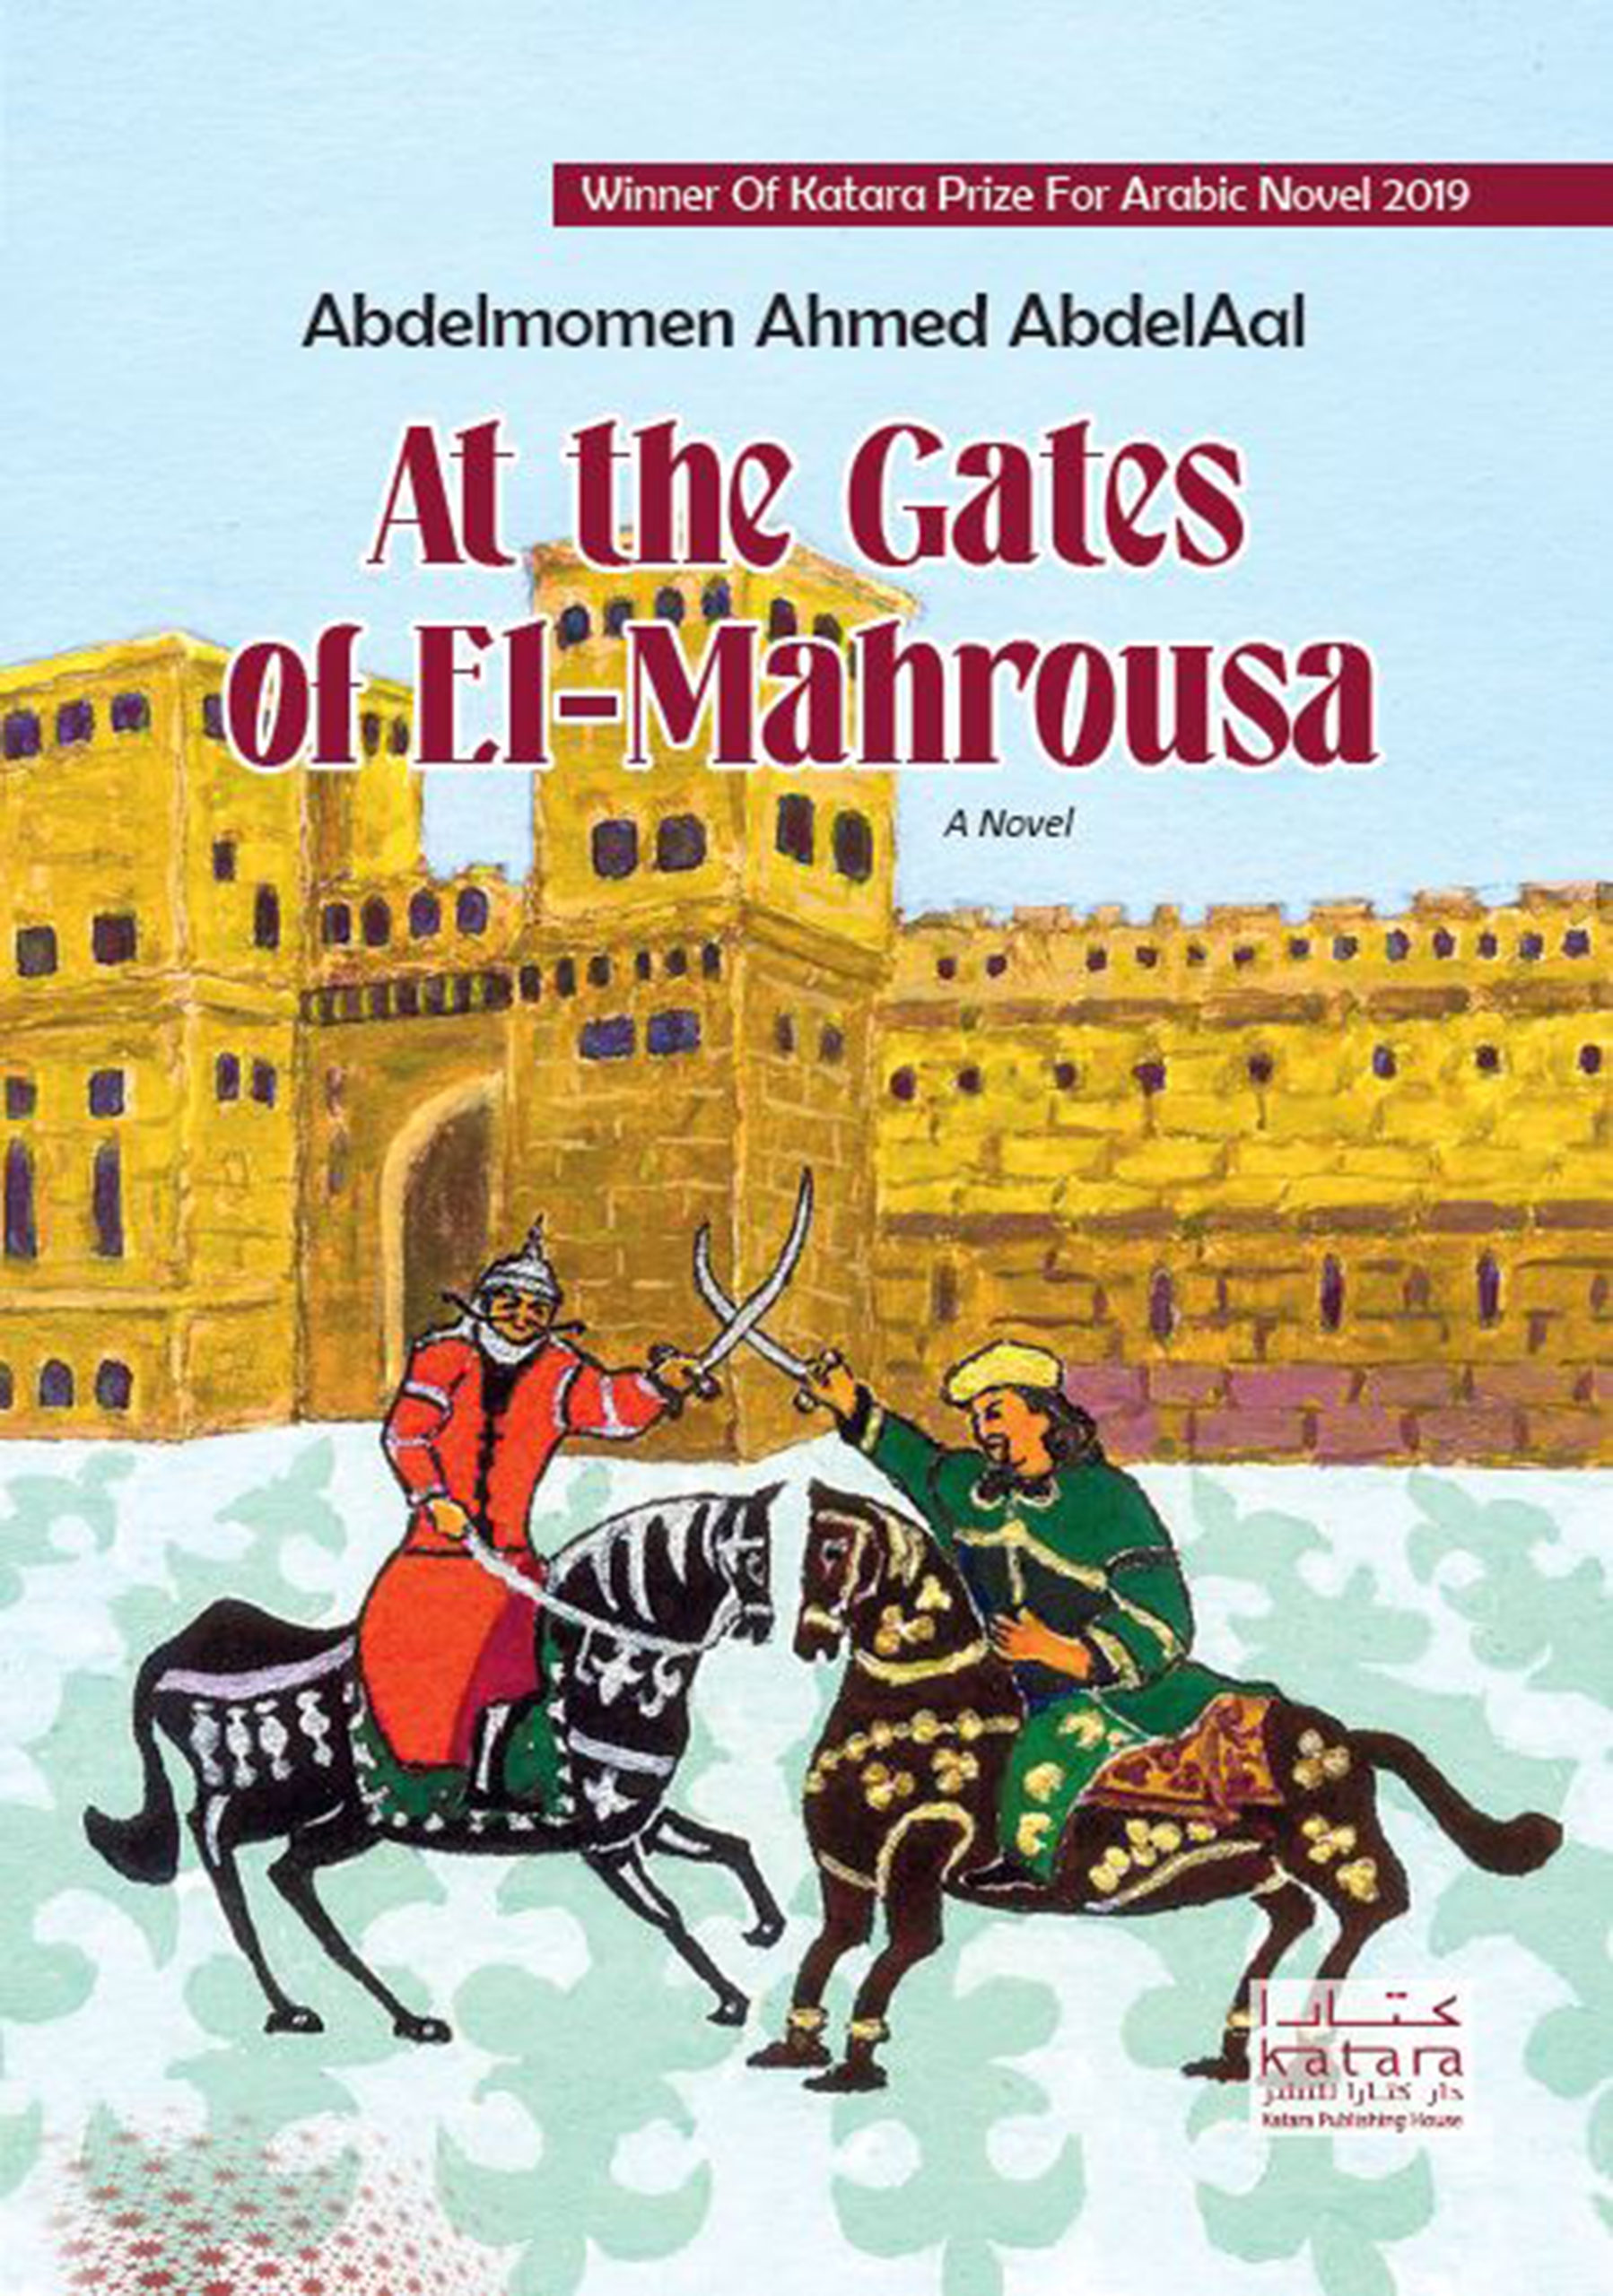 At The Gates of El-Mahrousa